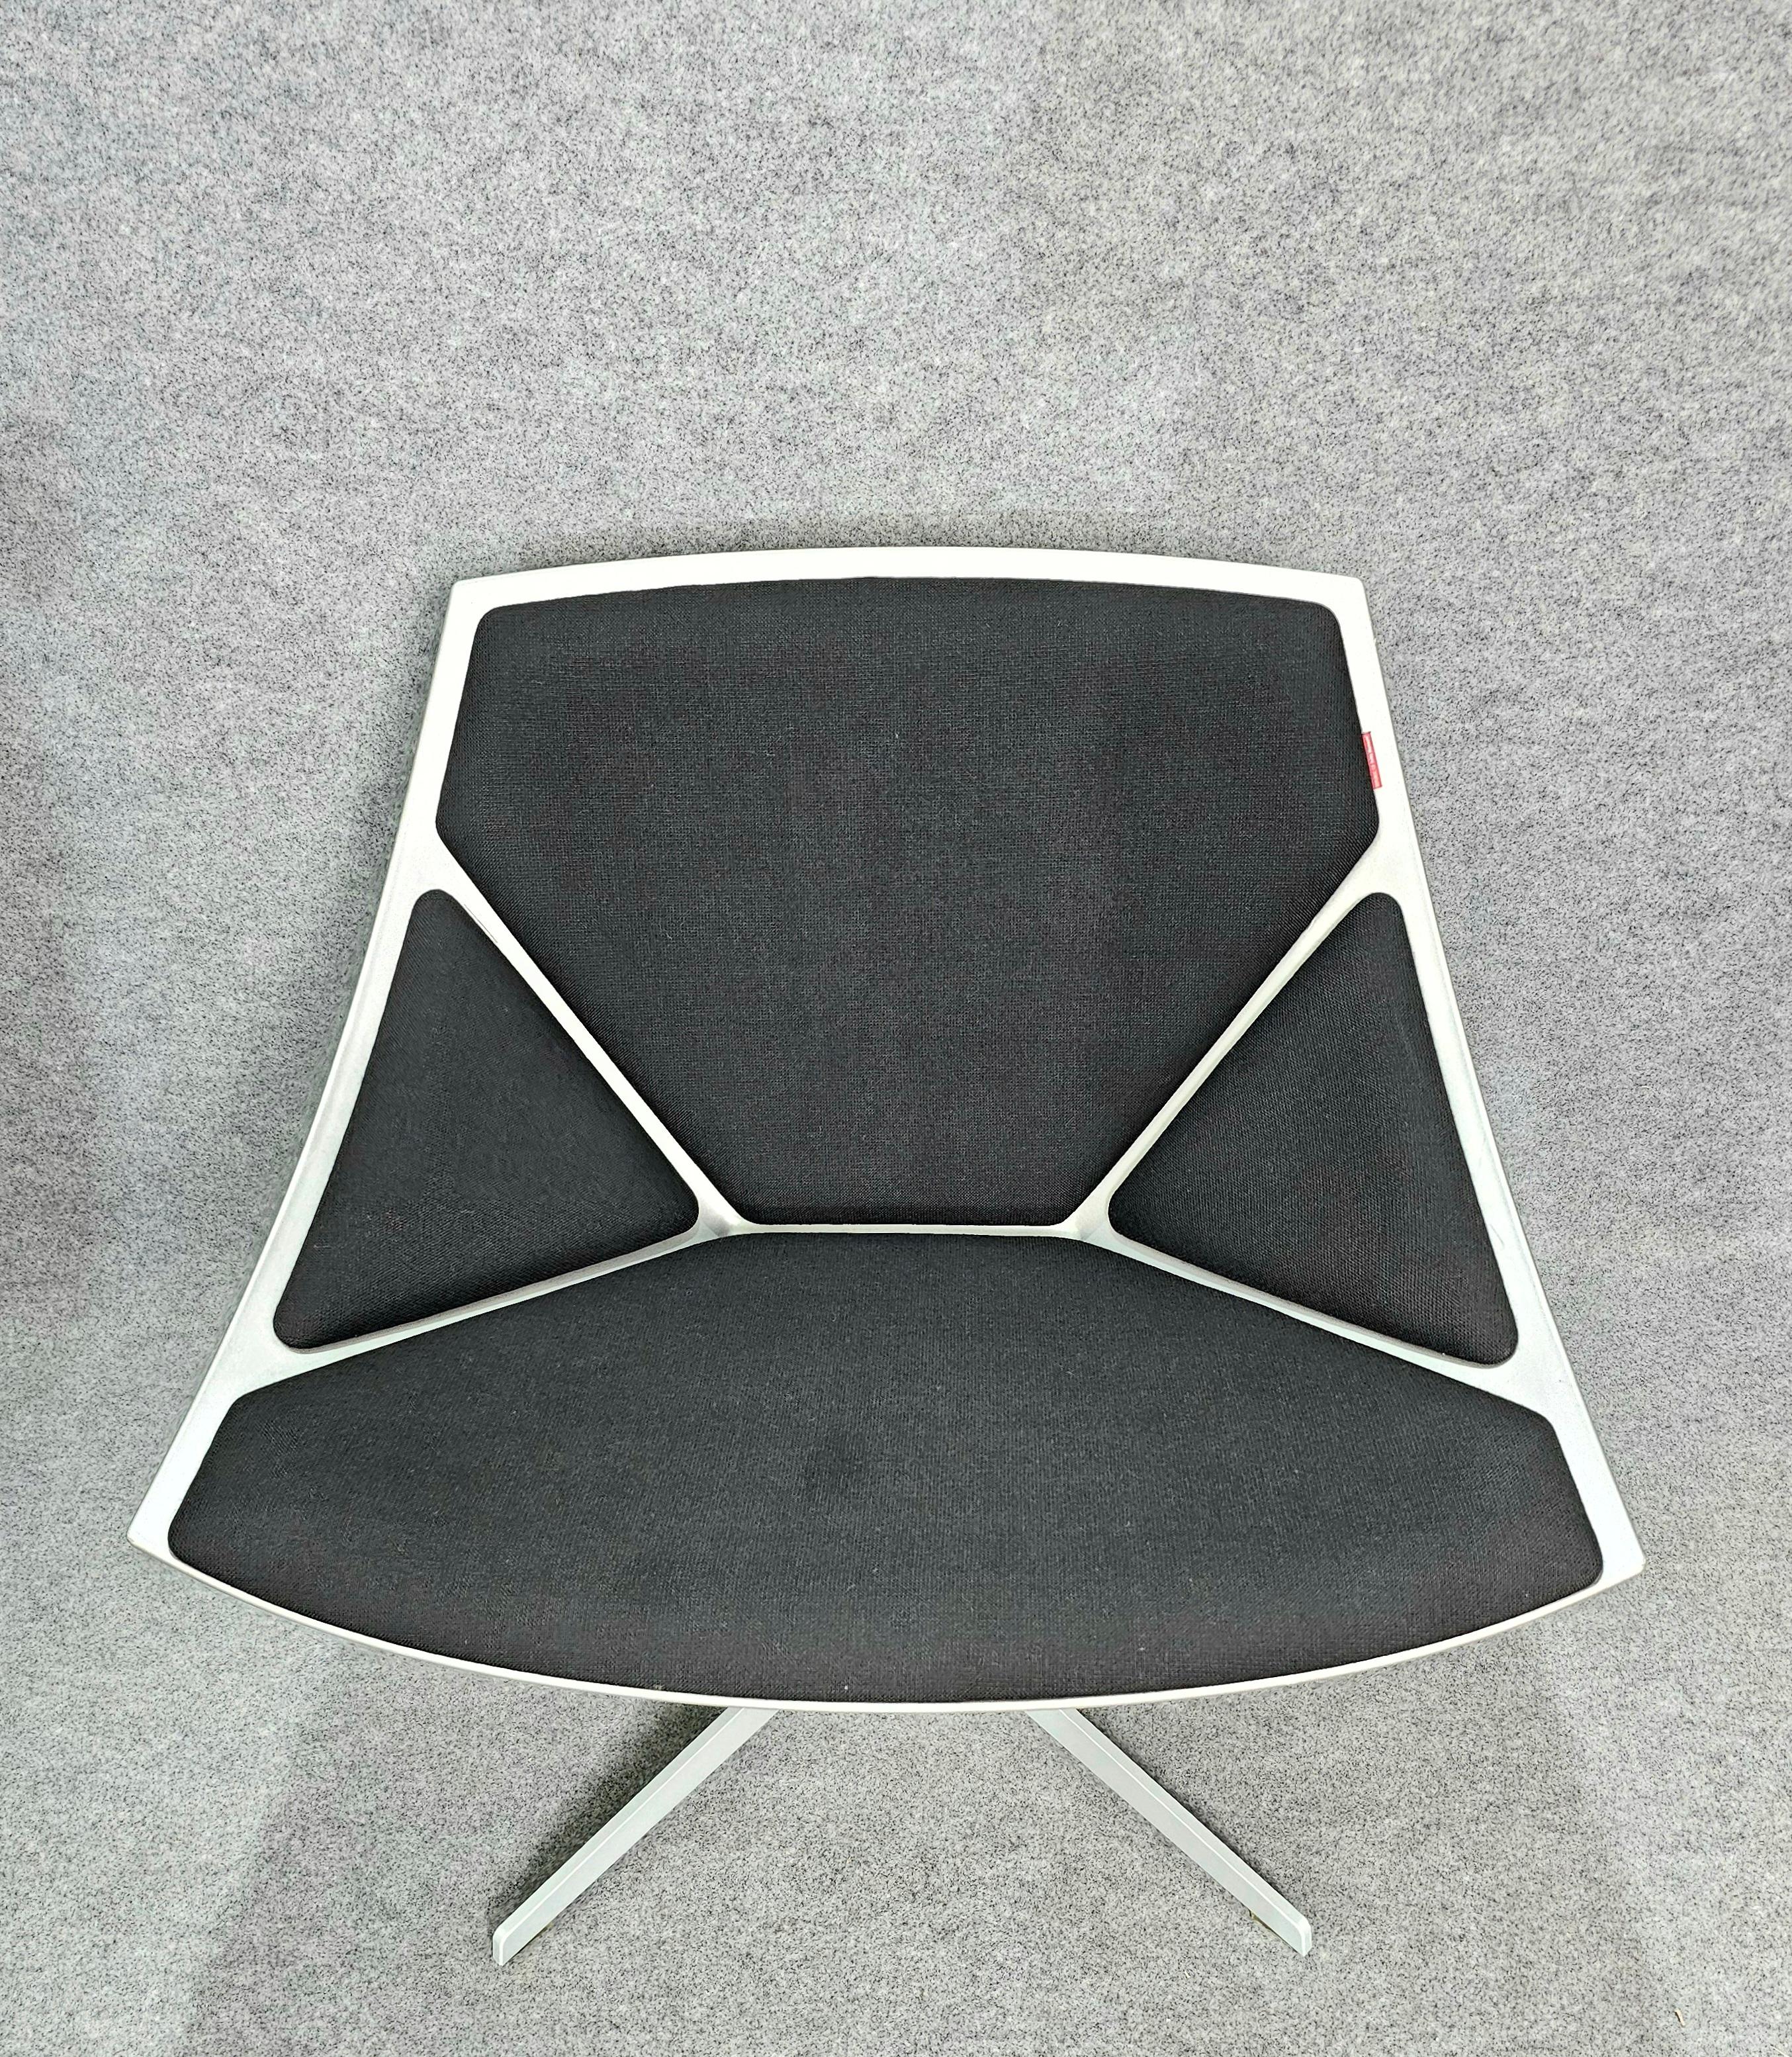 Jehs & Laub for Fritz Hansen Swivel Chair Modern Pair Denmark Design 2007 For Sale 1